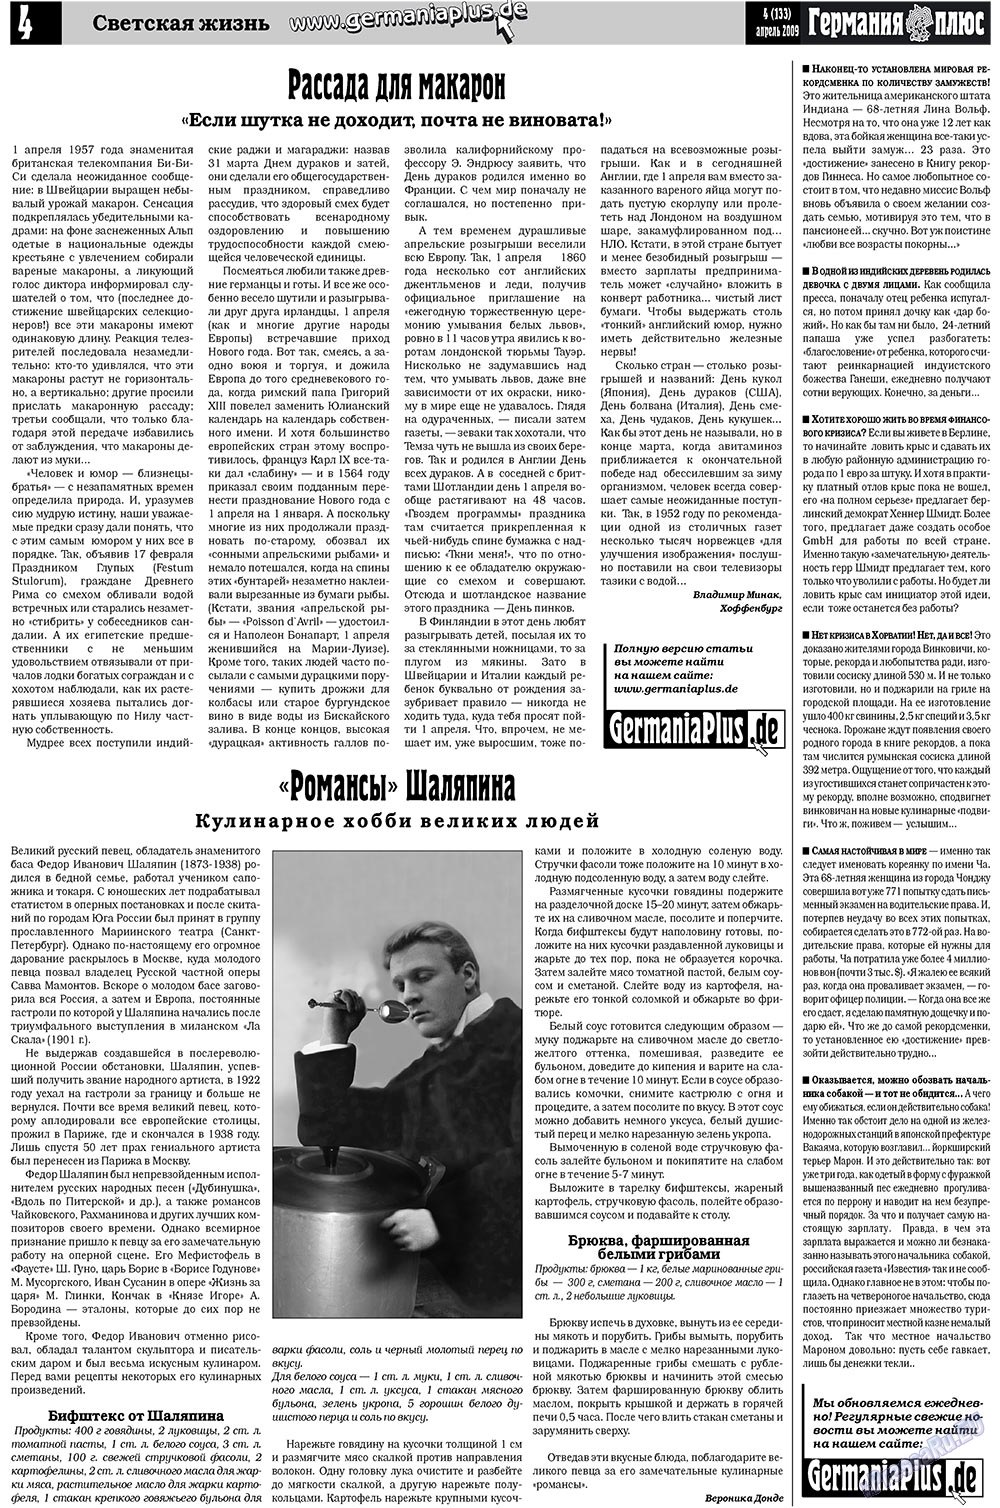 Германия плюс (газета). 2009 год, номер 4, стр. 4